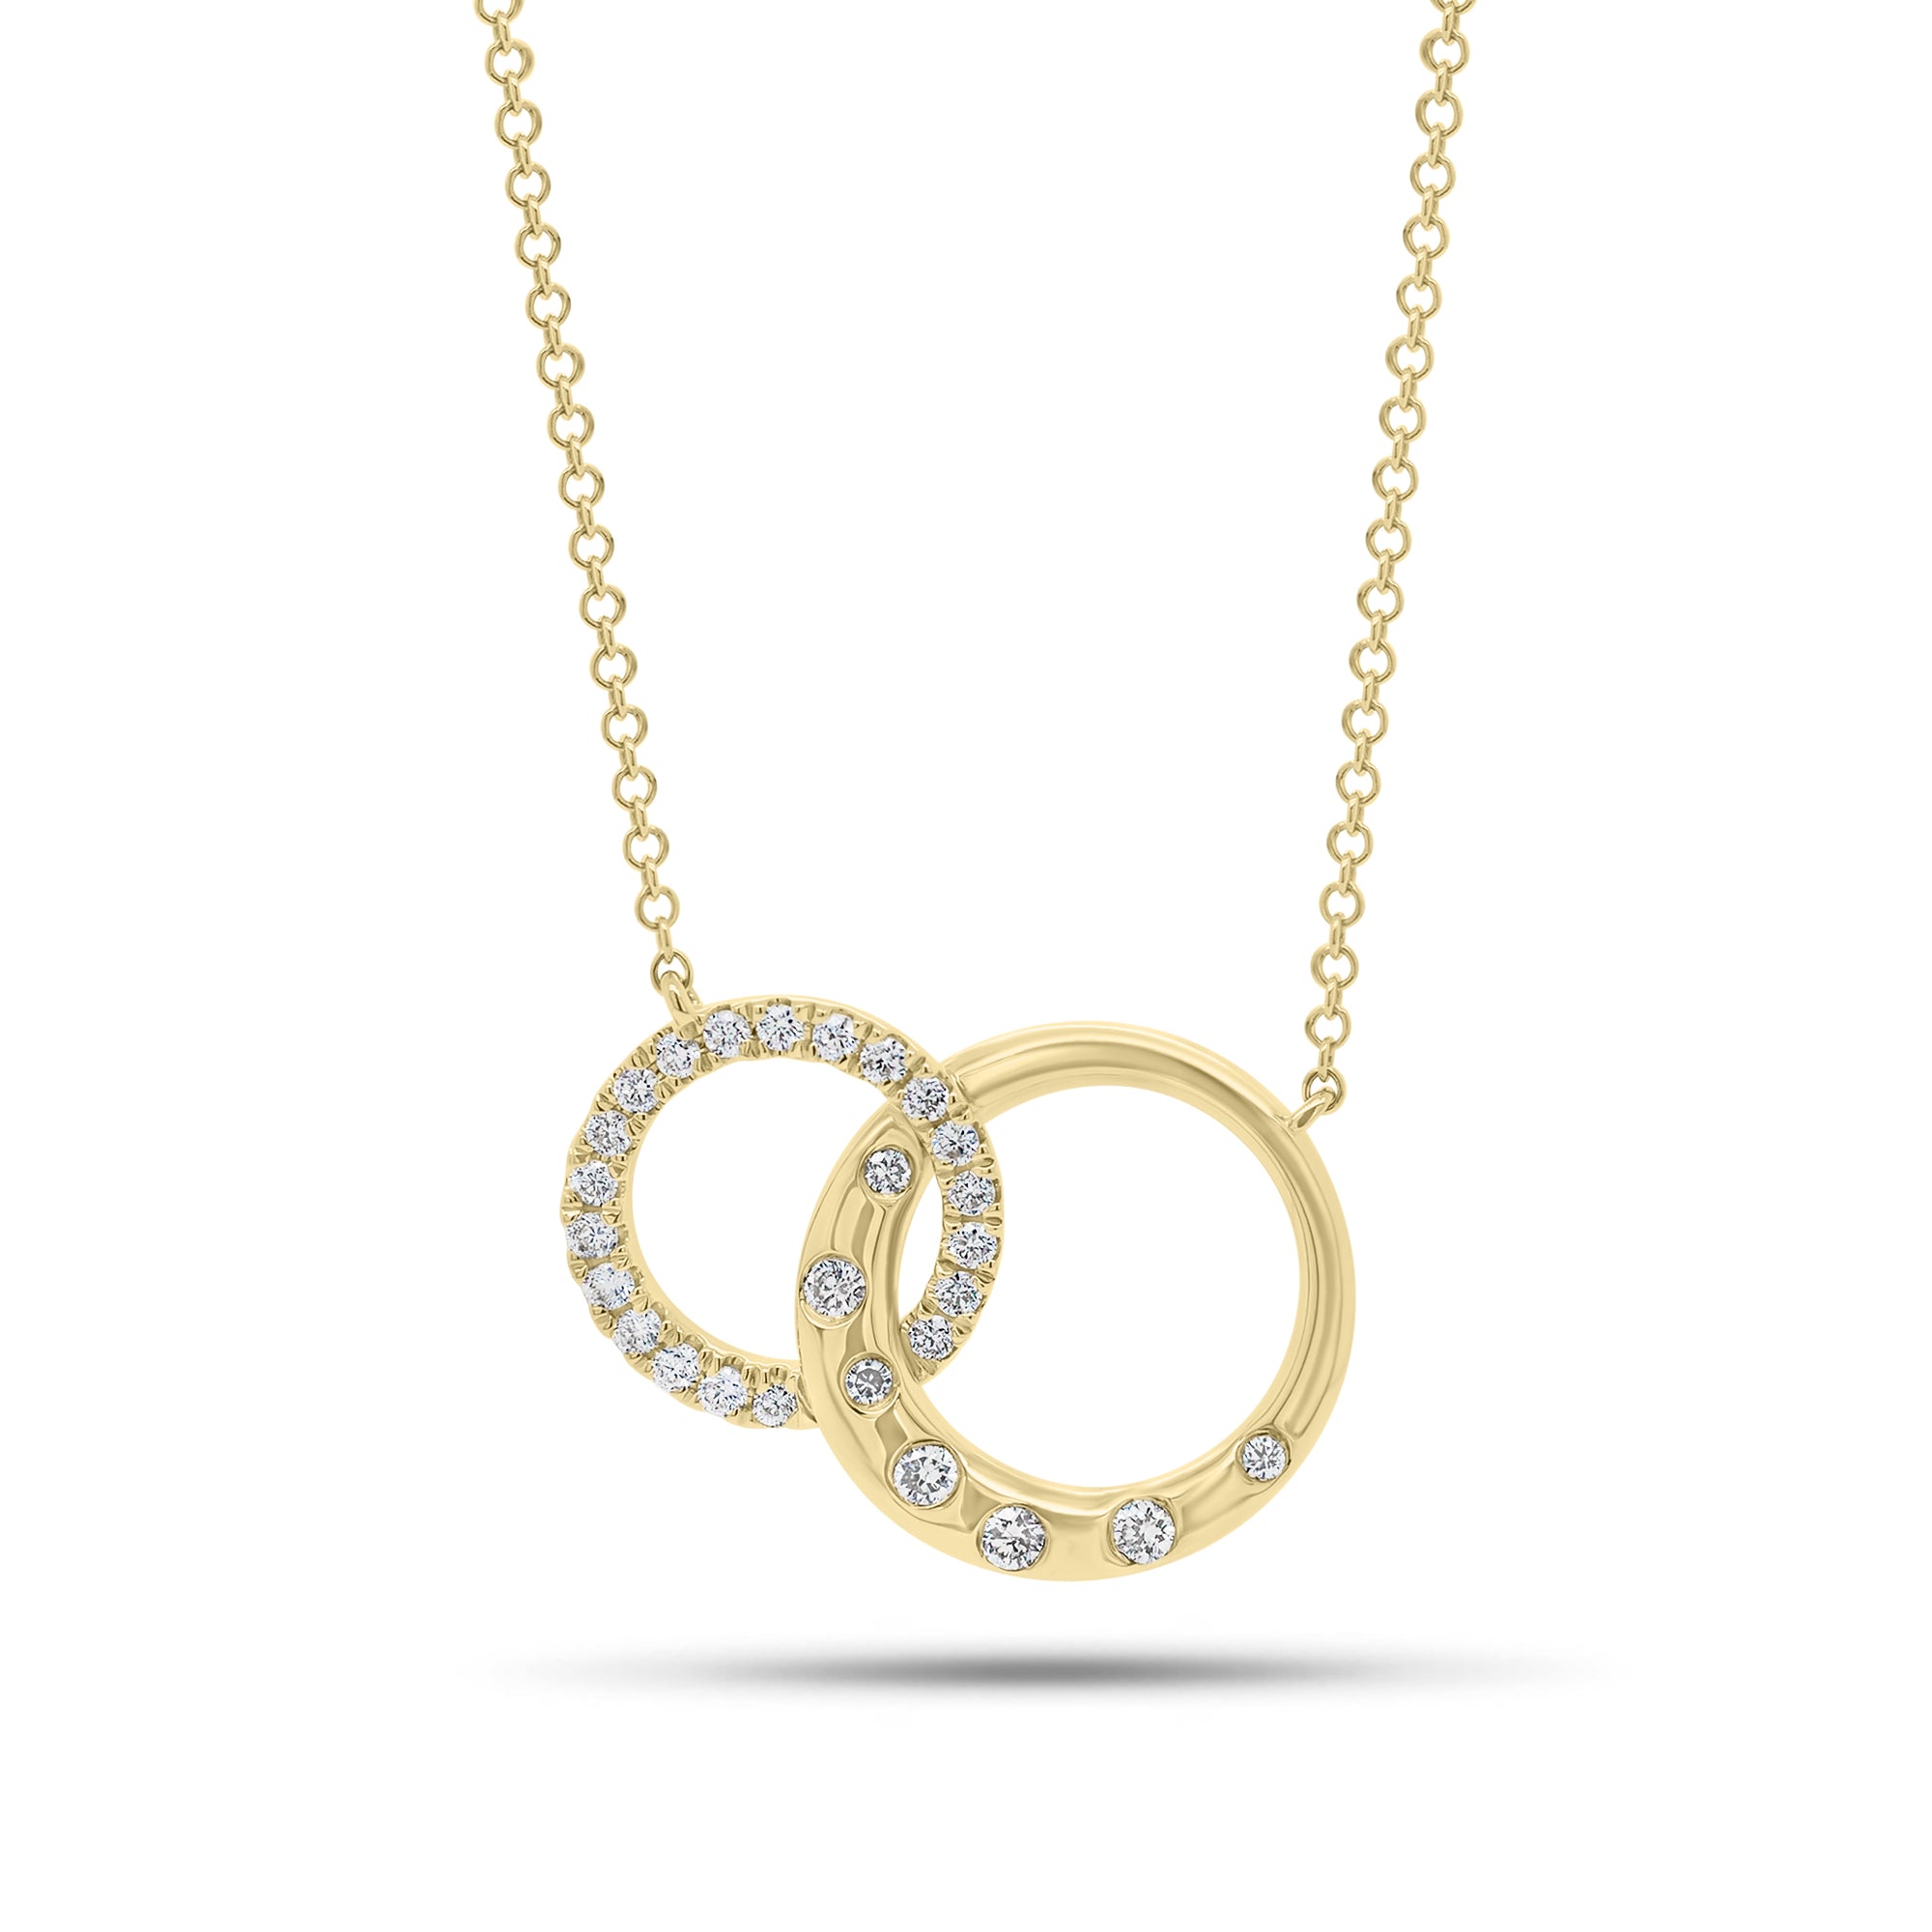 Diamond & Gold Interlocking Links Necklace - 14K gold weighing 3.40 grams  - 26 round diamonds weighing 0.25 carats